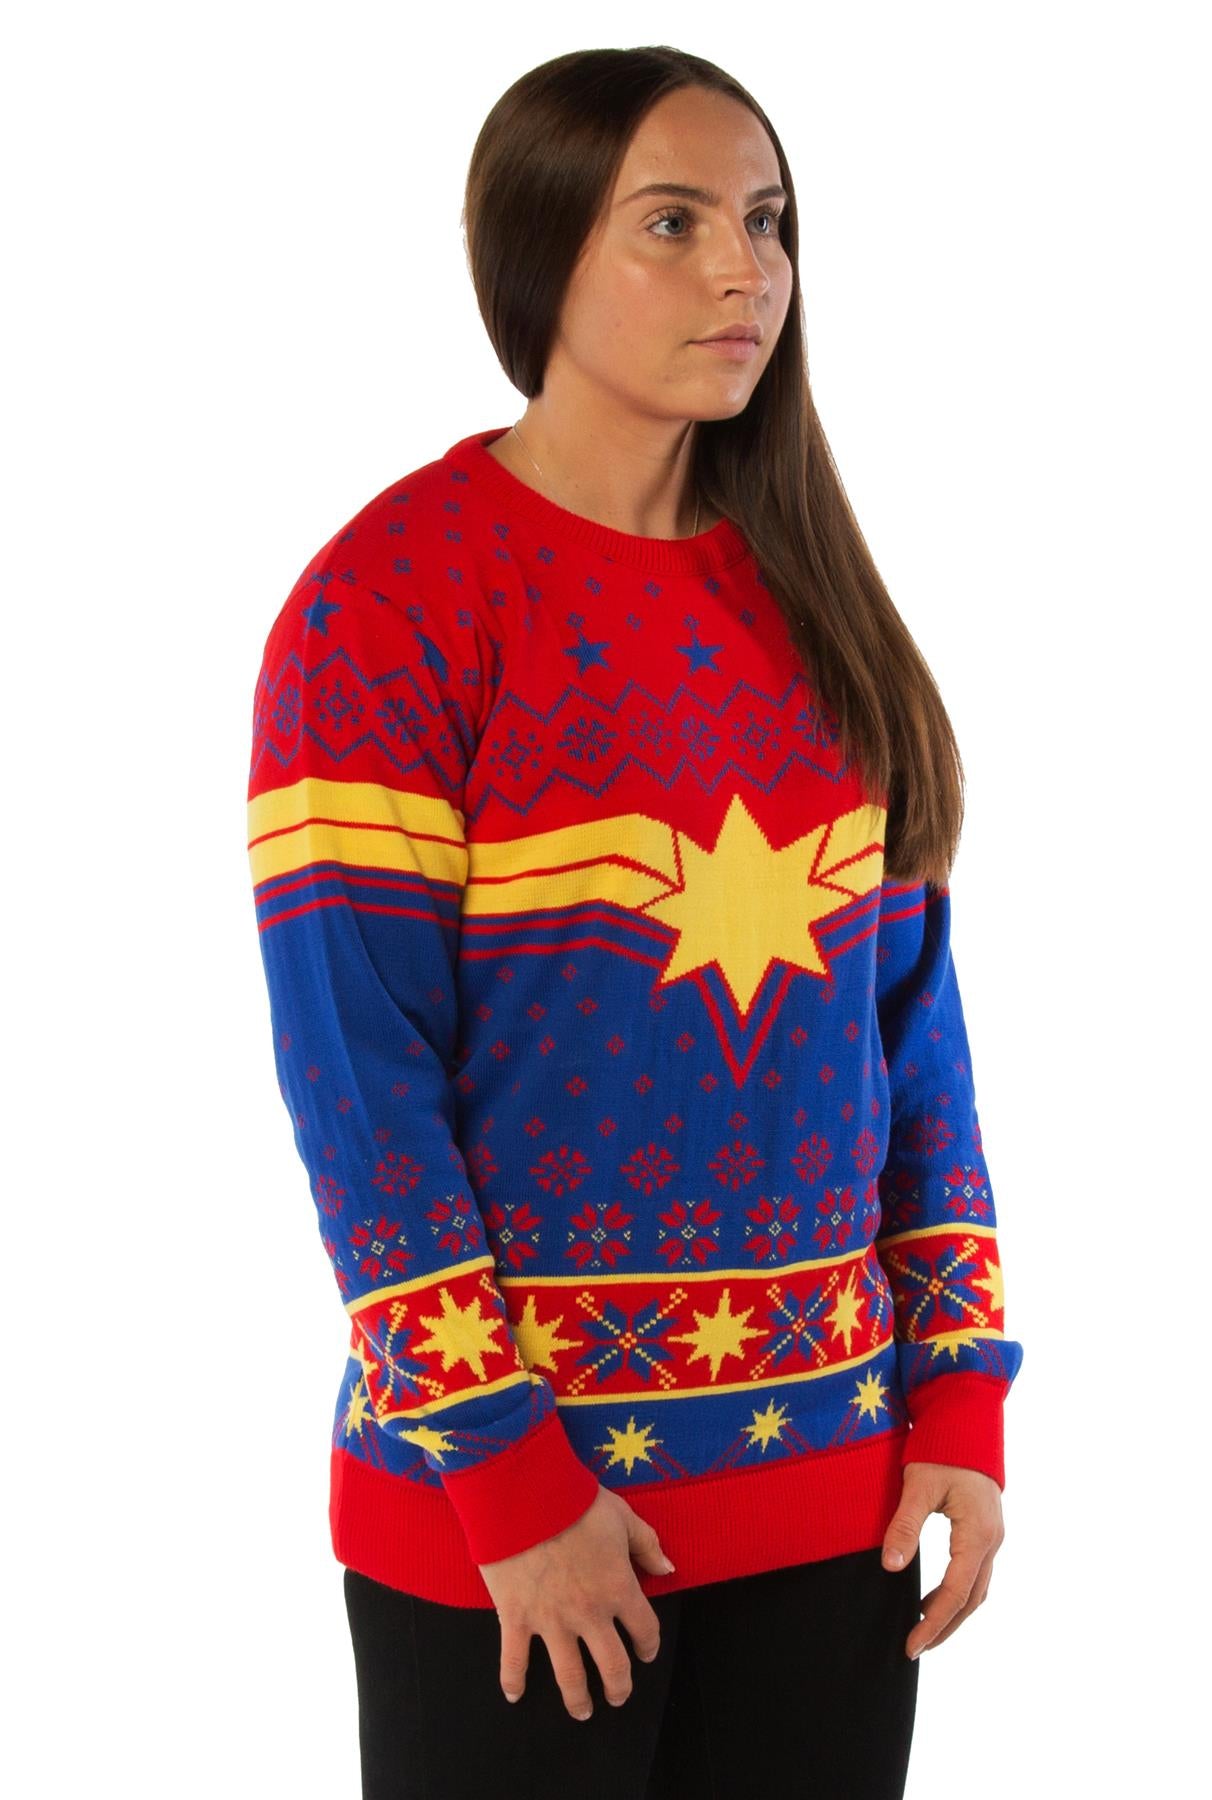 marvel knitted christmas jumper